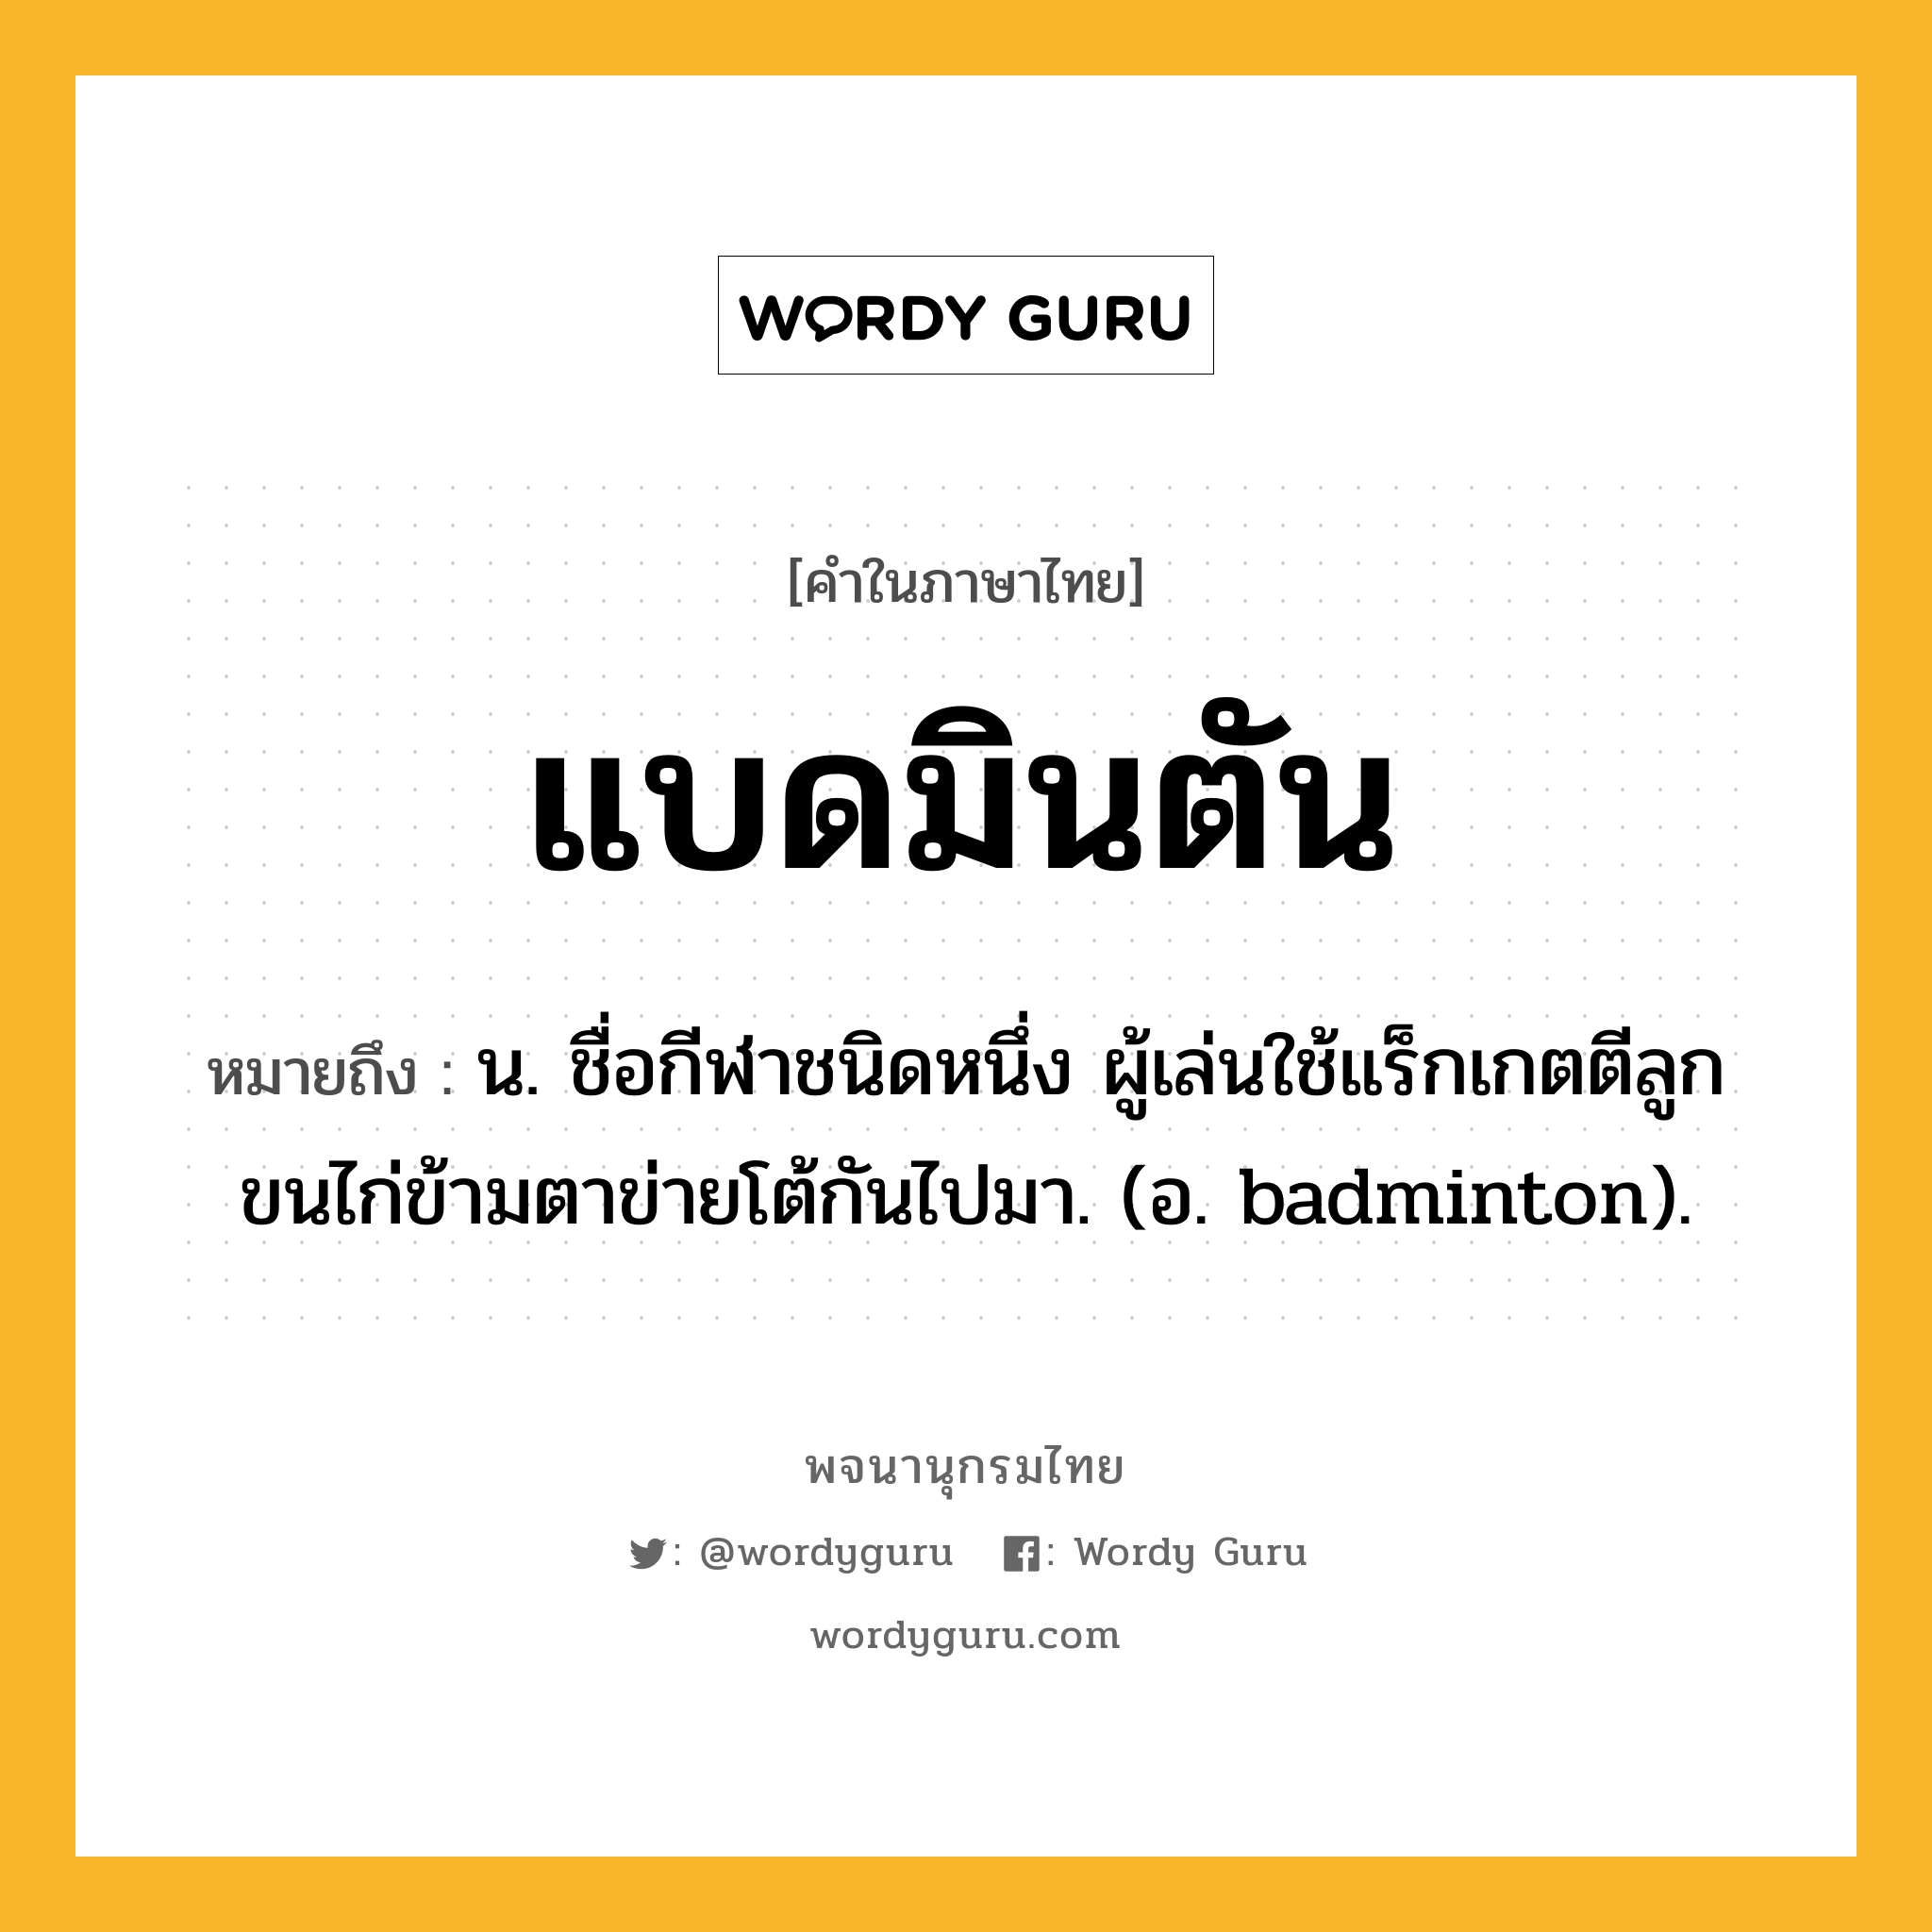 แบดมินตัน ความหมาย หมายถึงอะไร?, คำในภาษาไทย แบดมินตัน หมายถึง น. ชื่อกีฬาชนิดหนึ่ง ผู้เล่นใช้แร็กเกตตีลูกขนไก่ข้ามตาข่ายโต้กันไปมา. (อ. badminton).